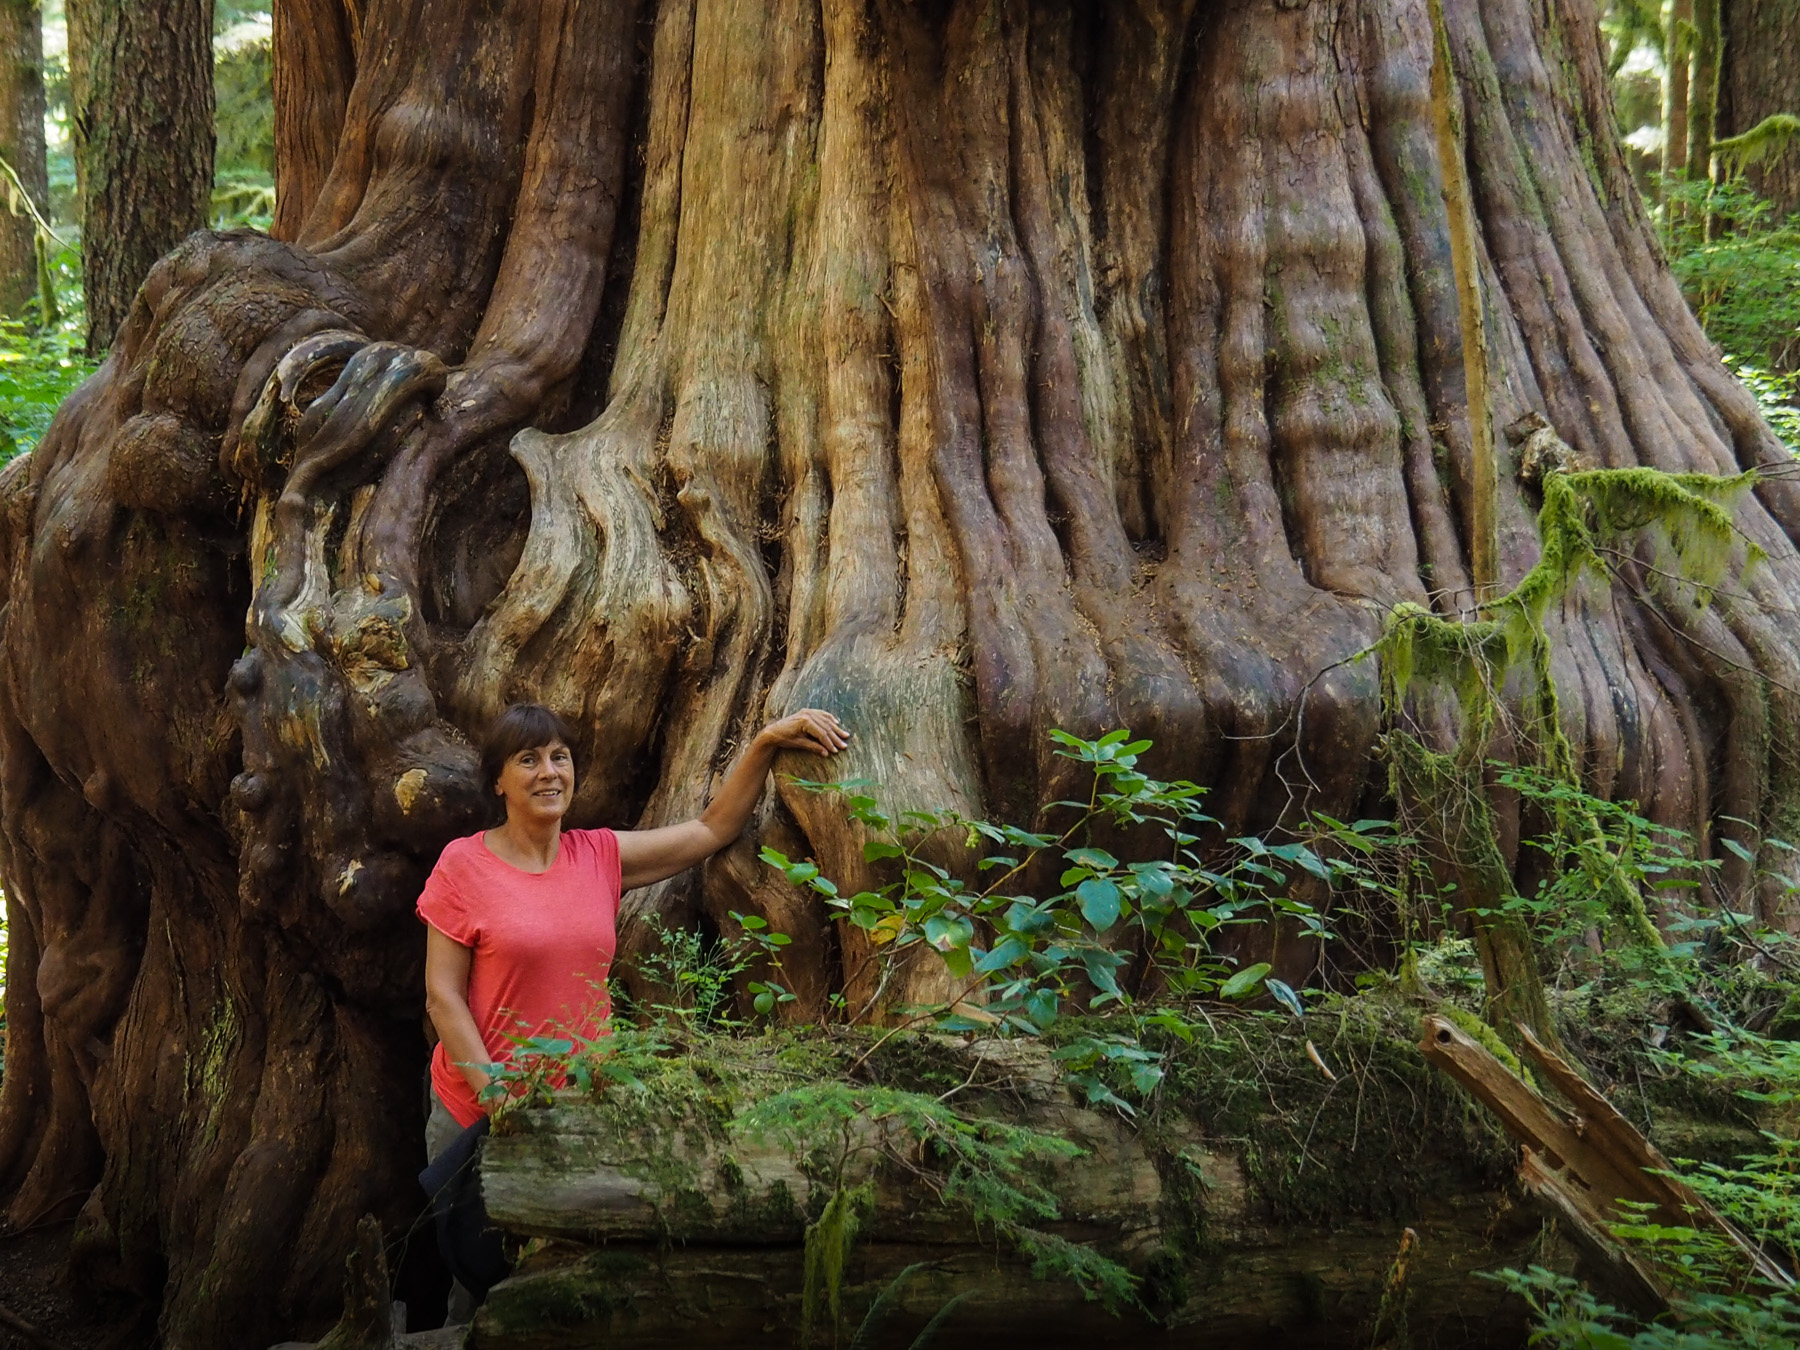 Avatar Grove, urzeitlicher versteckter Regenwald